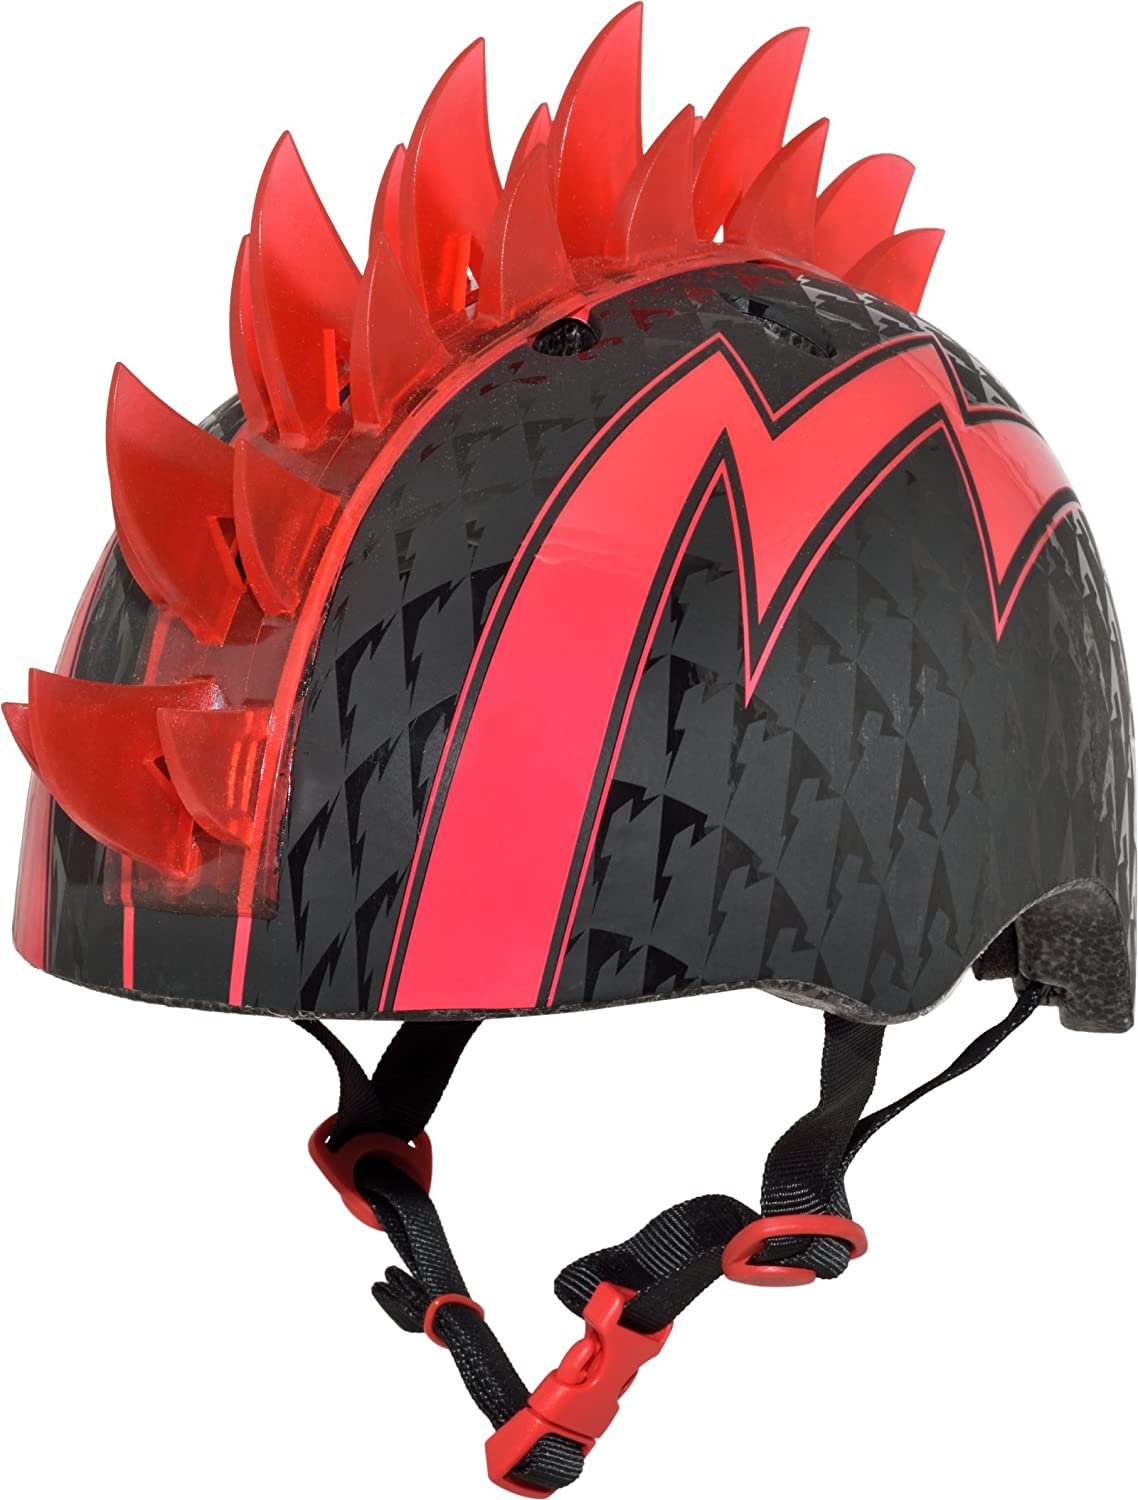 9. Raskullz Mohawk Toddler Helmets